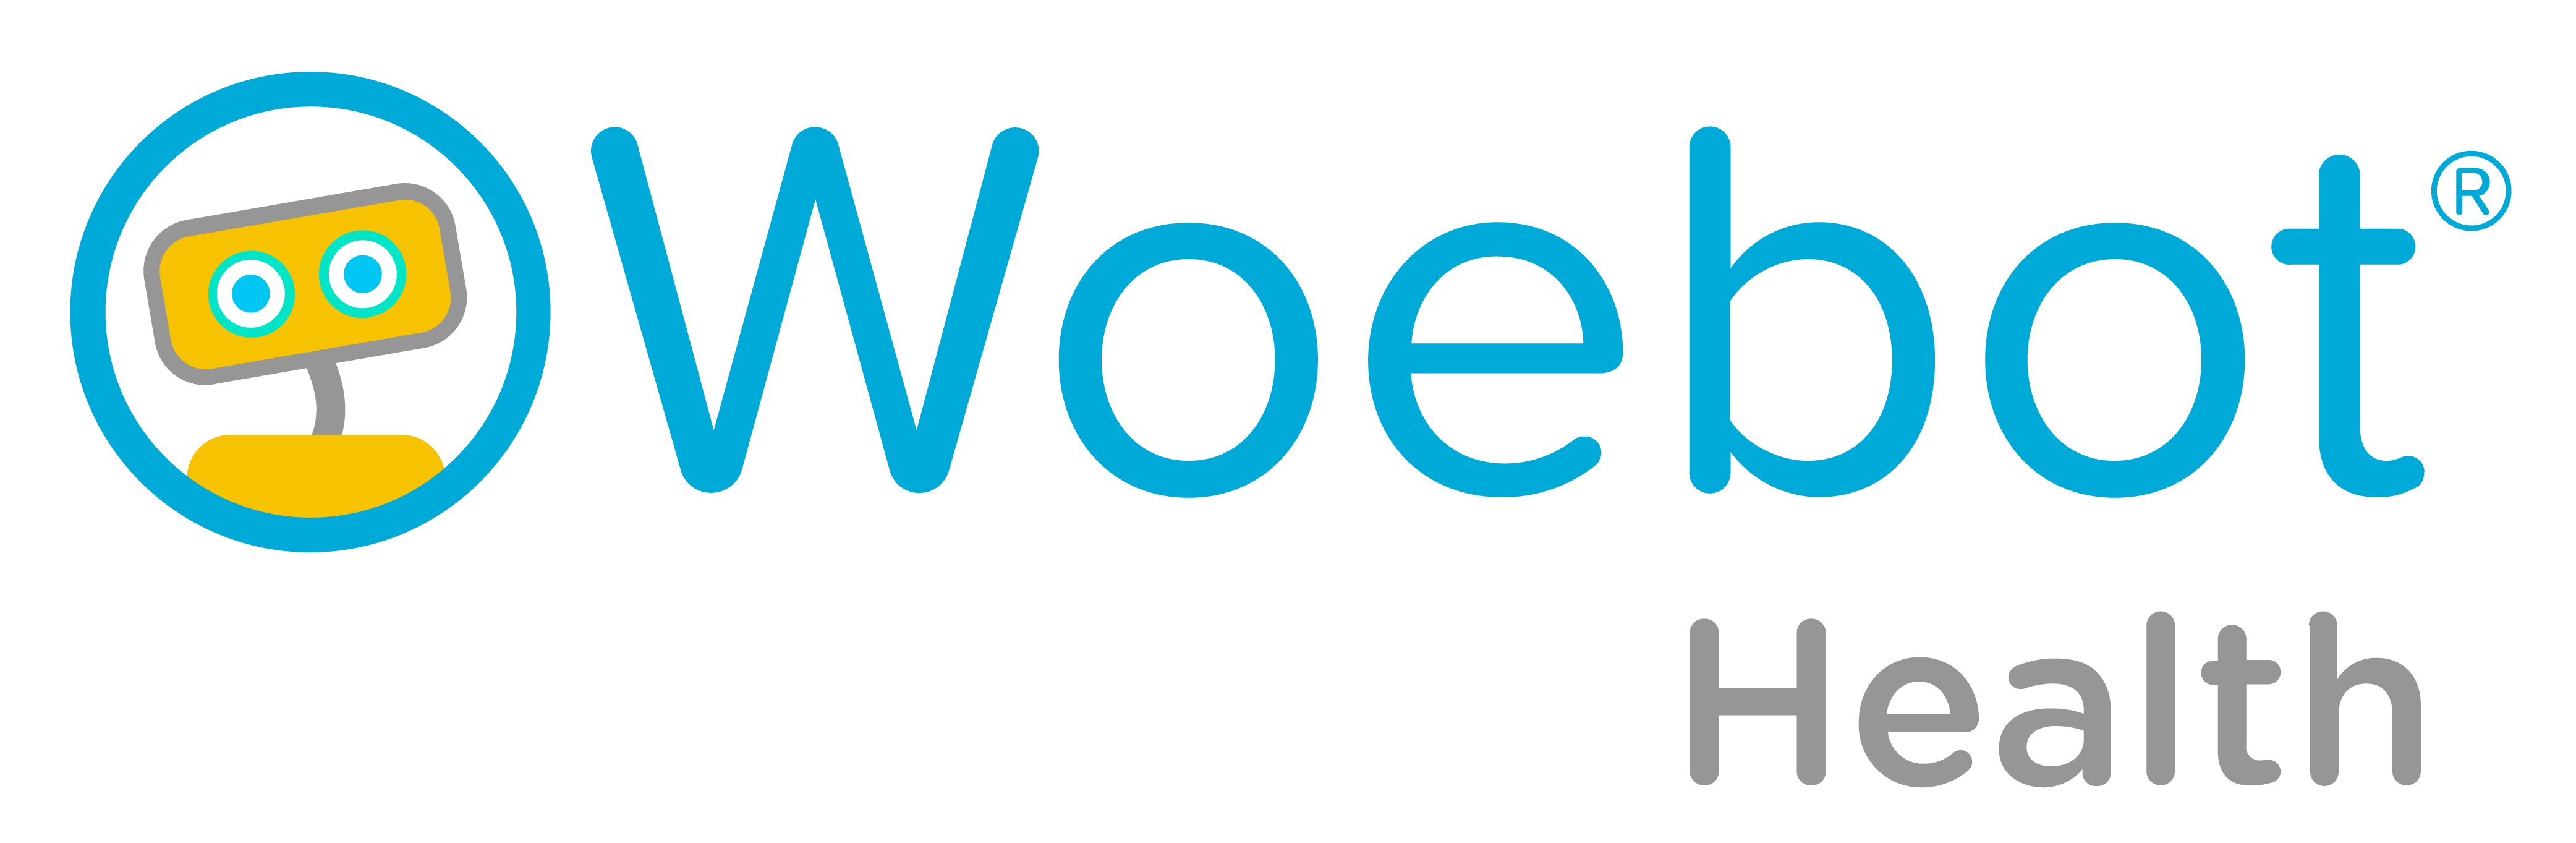 Woebot Logo